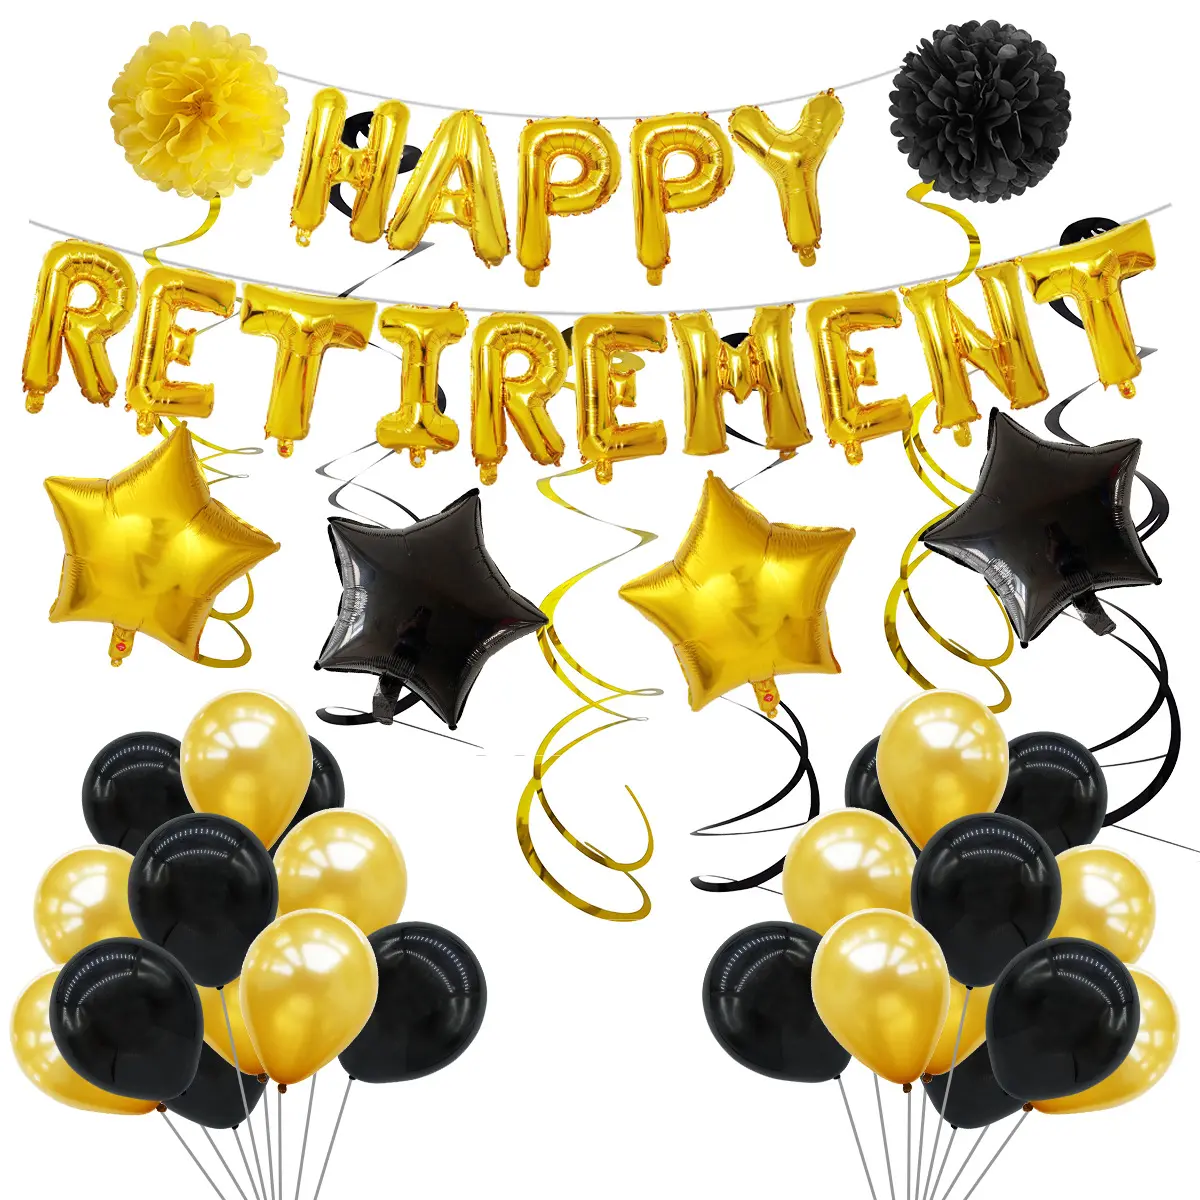 ฉลองเกษียณอายุ ชุดบอลลูนอักษร 16 นิ้ว HAPPY Retirement พร้อมฟิล์มอลูมิเนียม บอลลูนปาร์ตี้เกษียณอายุ